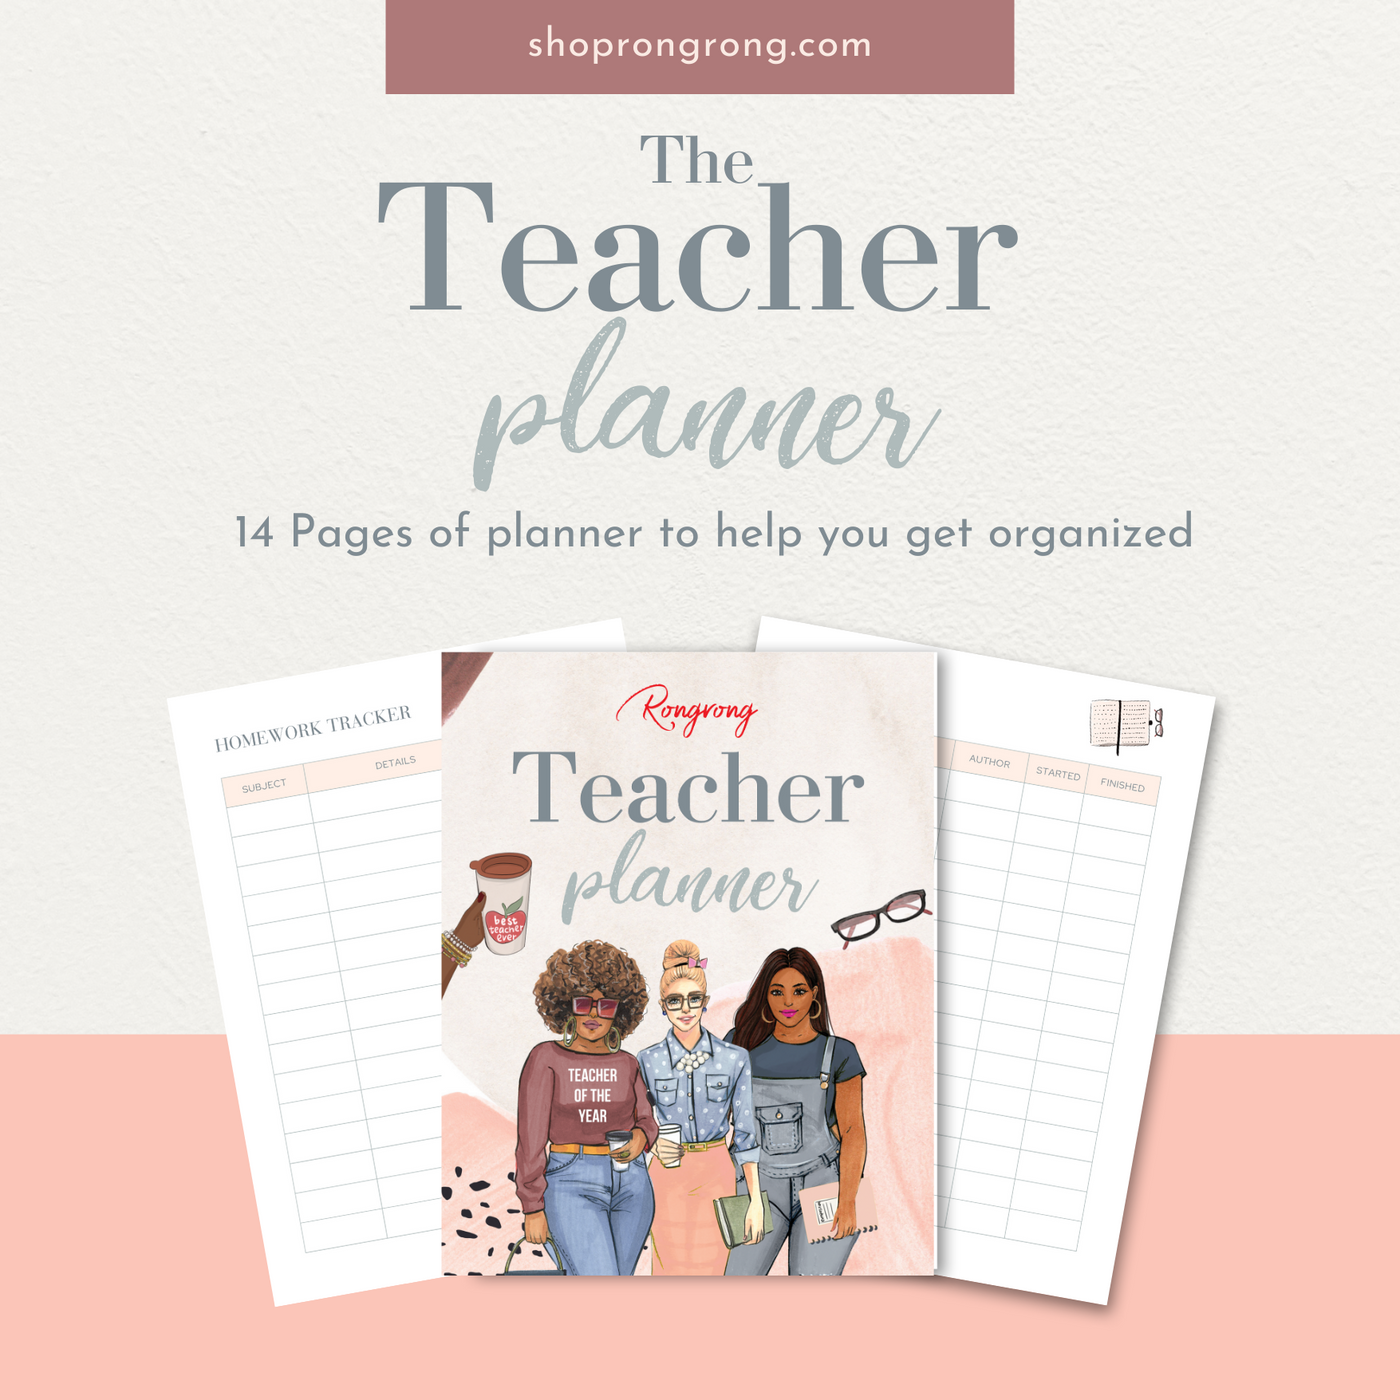 Shop Rongrong The Teacher Planner - Digital Planner for teachers